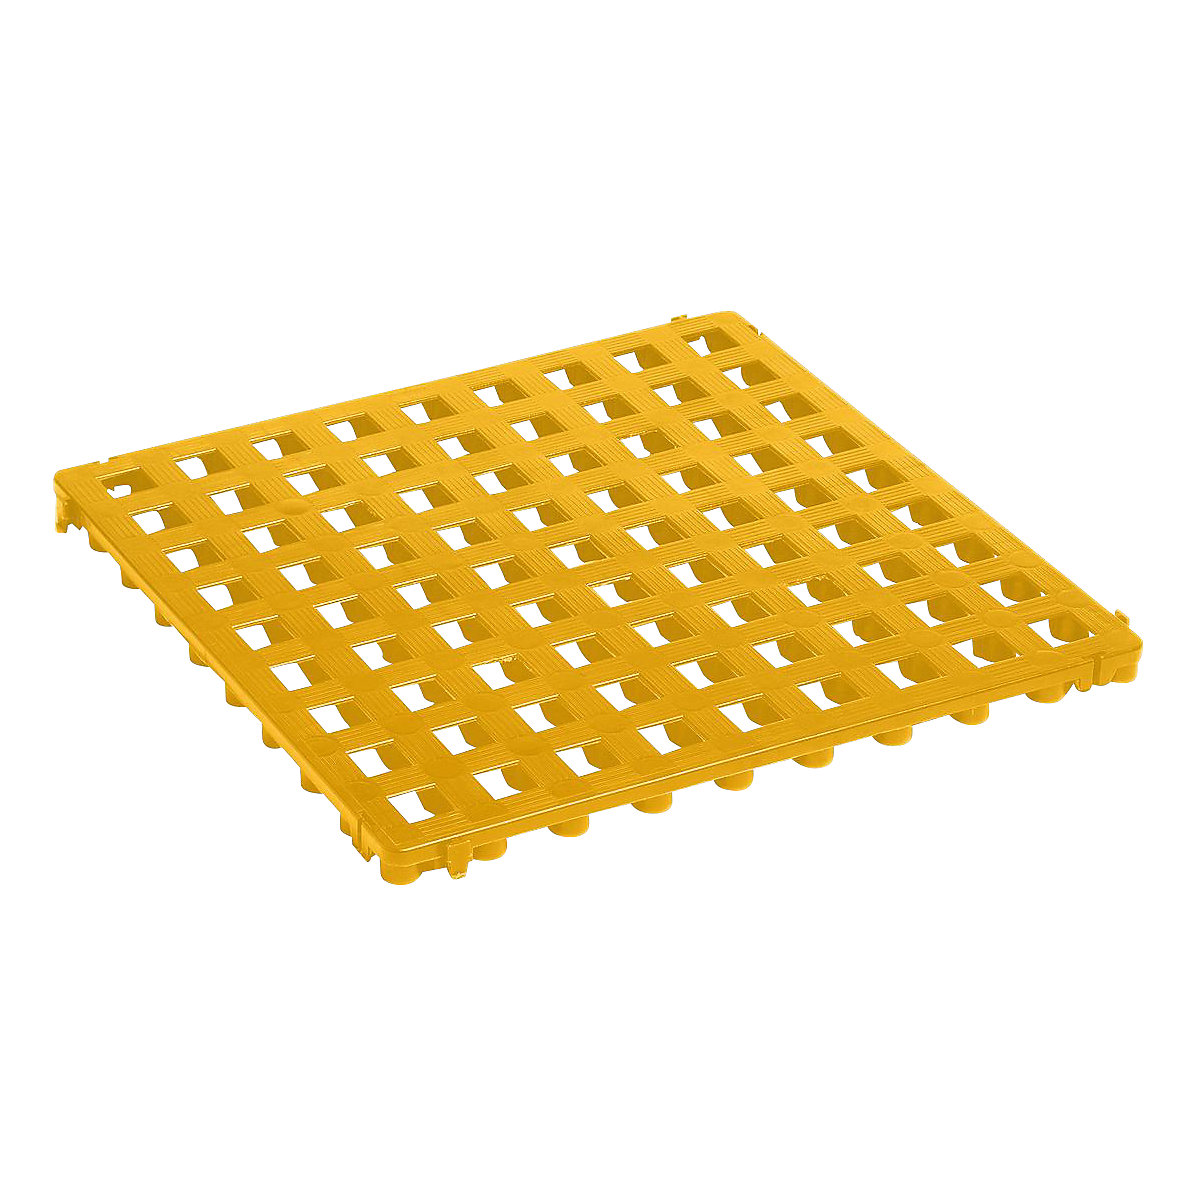 Ruszt podłogowy z tworzywa, polietylen, 500 x 500 mm, standard, opak. 20 szt., żółty sygnalizacyjny